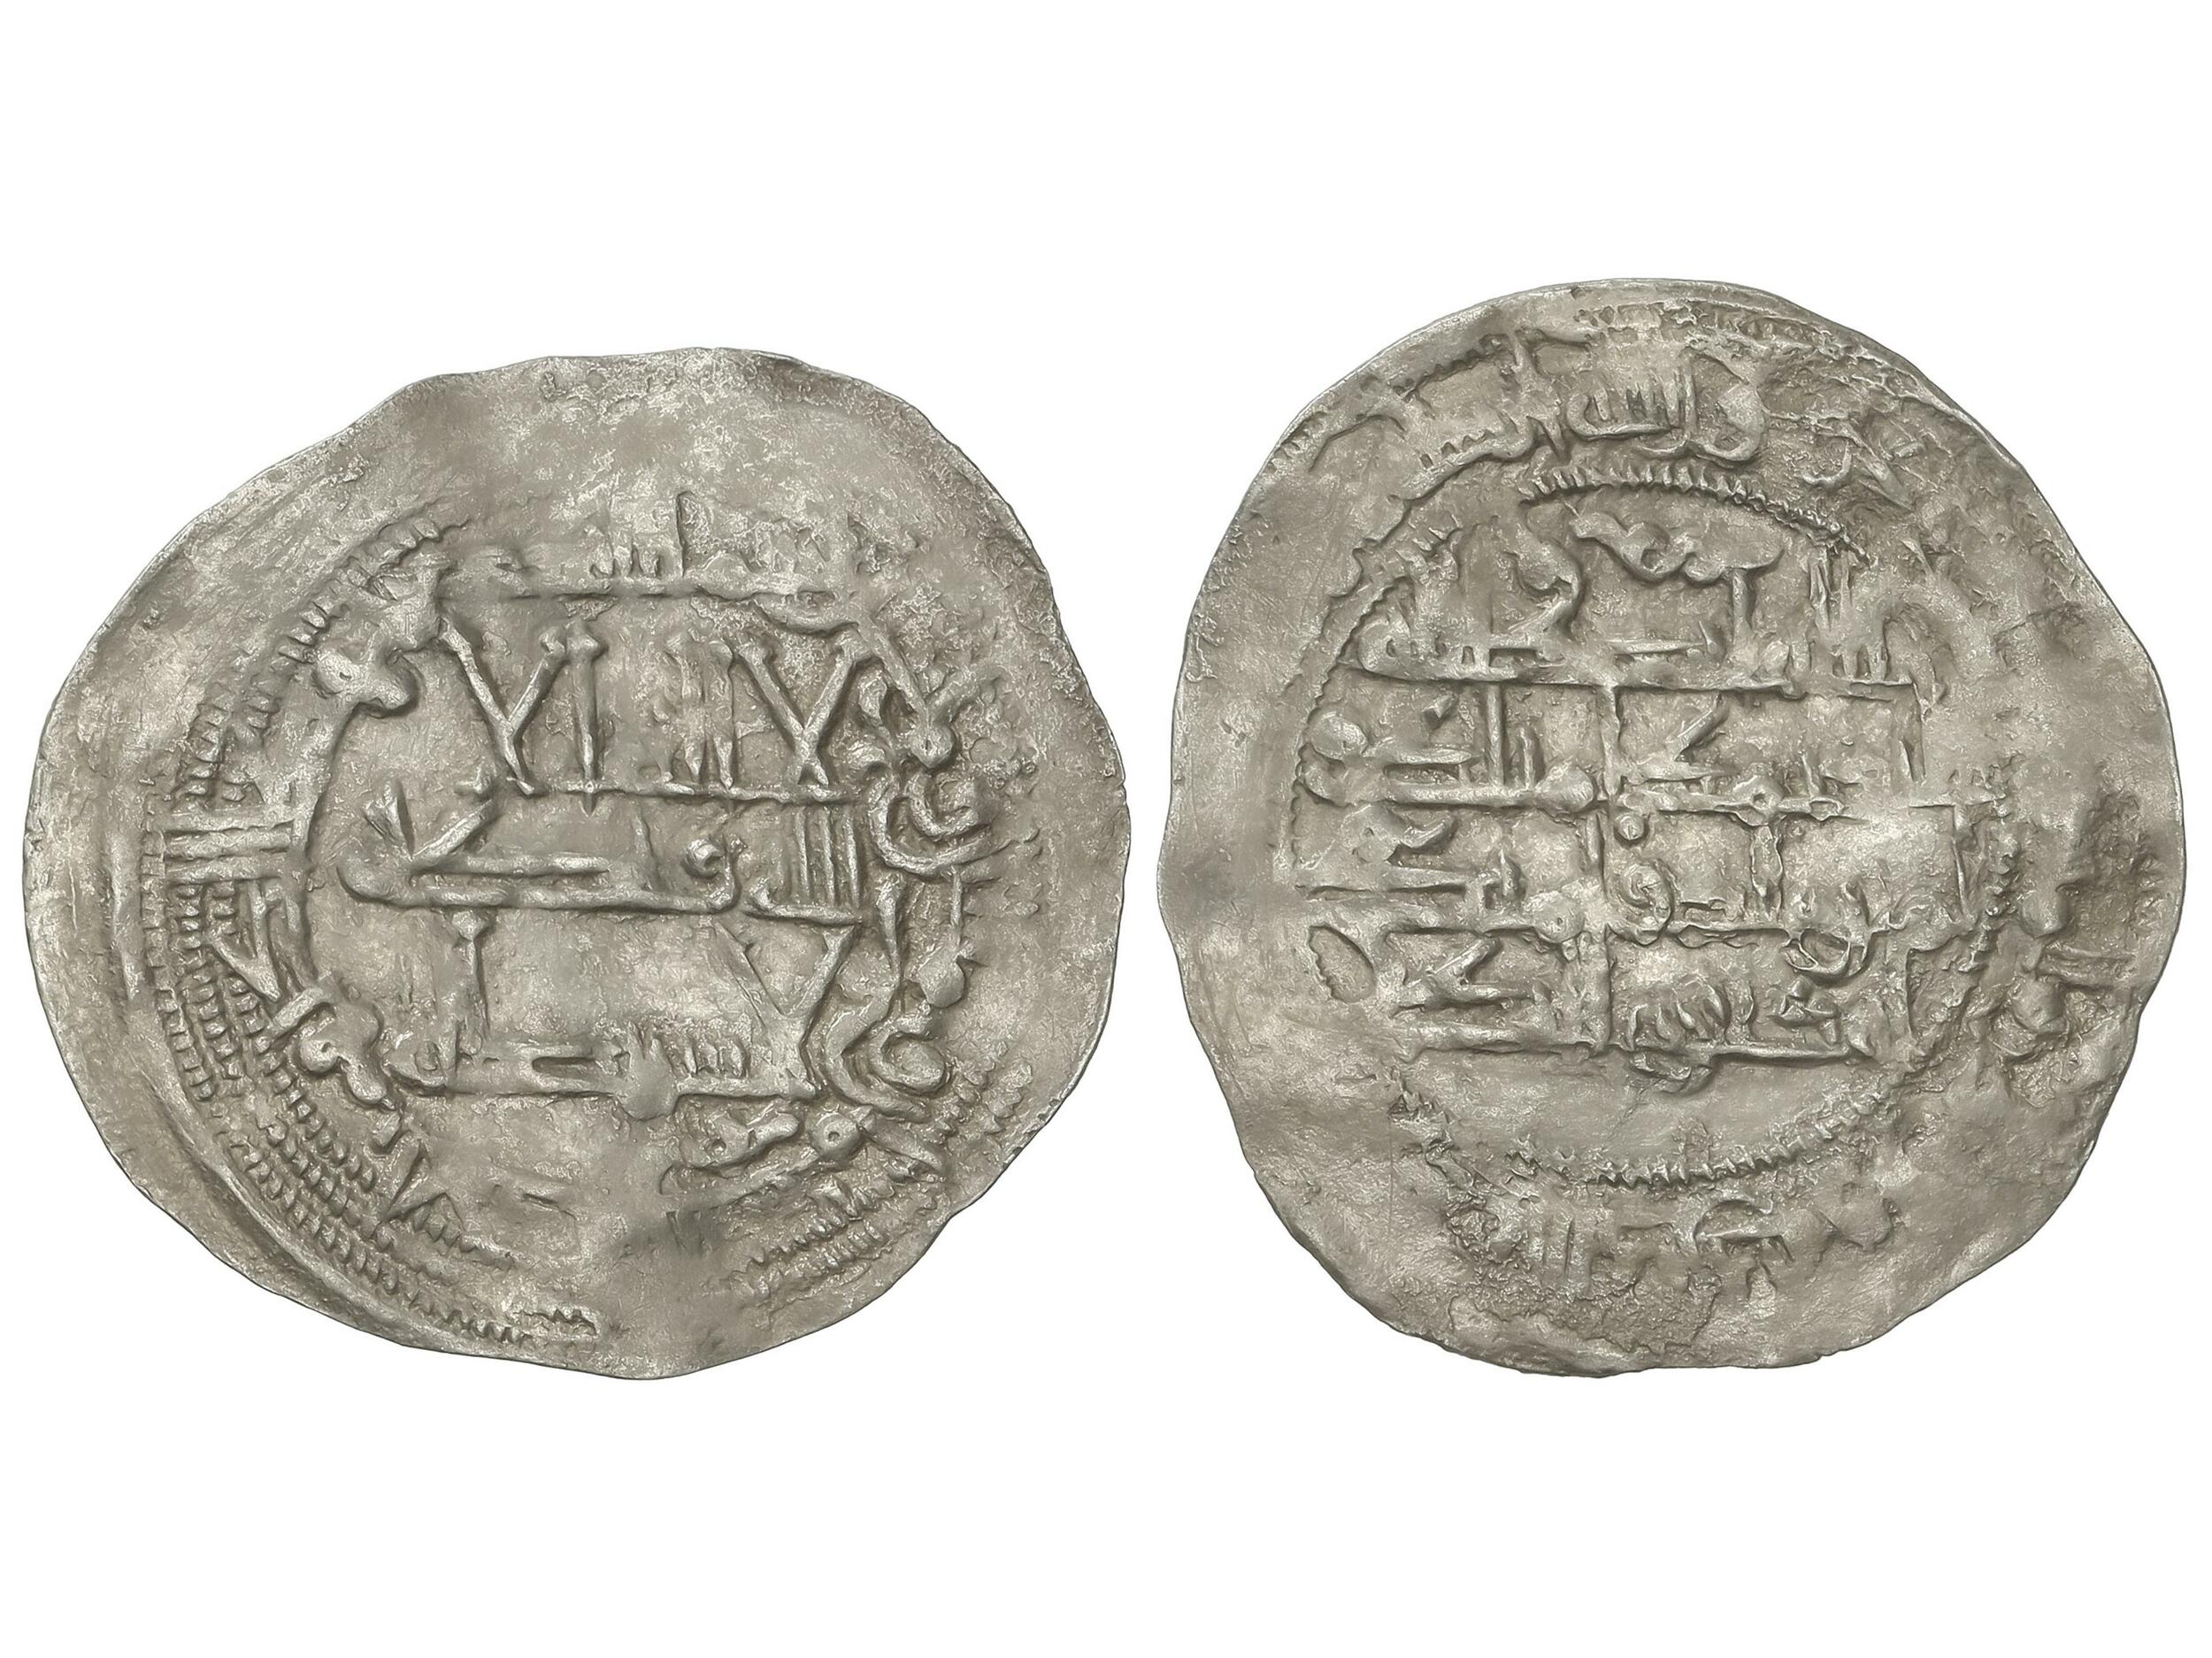 30.50: Islamic Coins - Umayyads of Spain